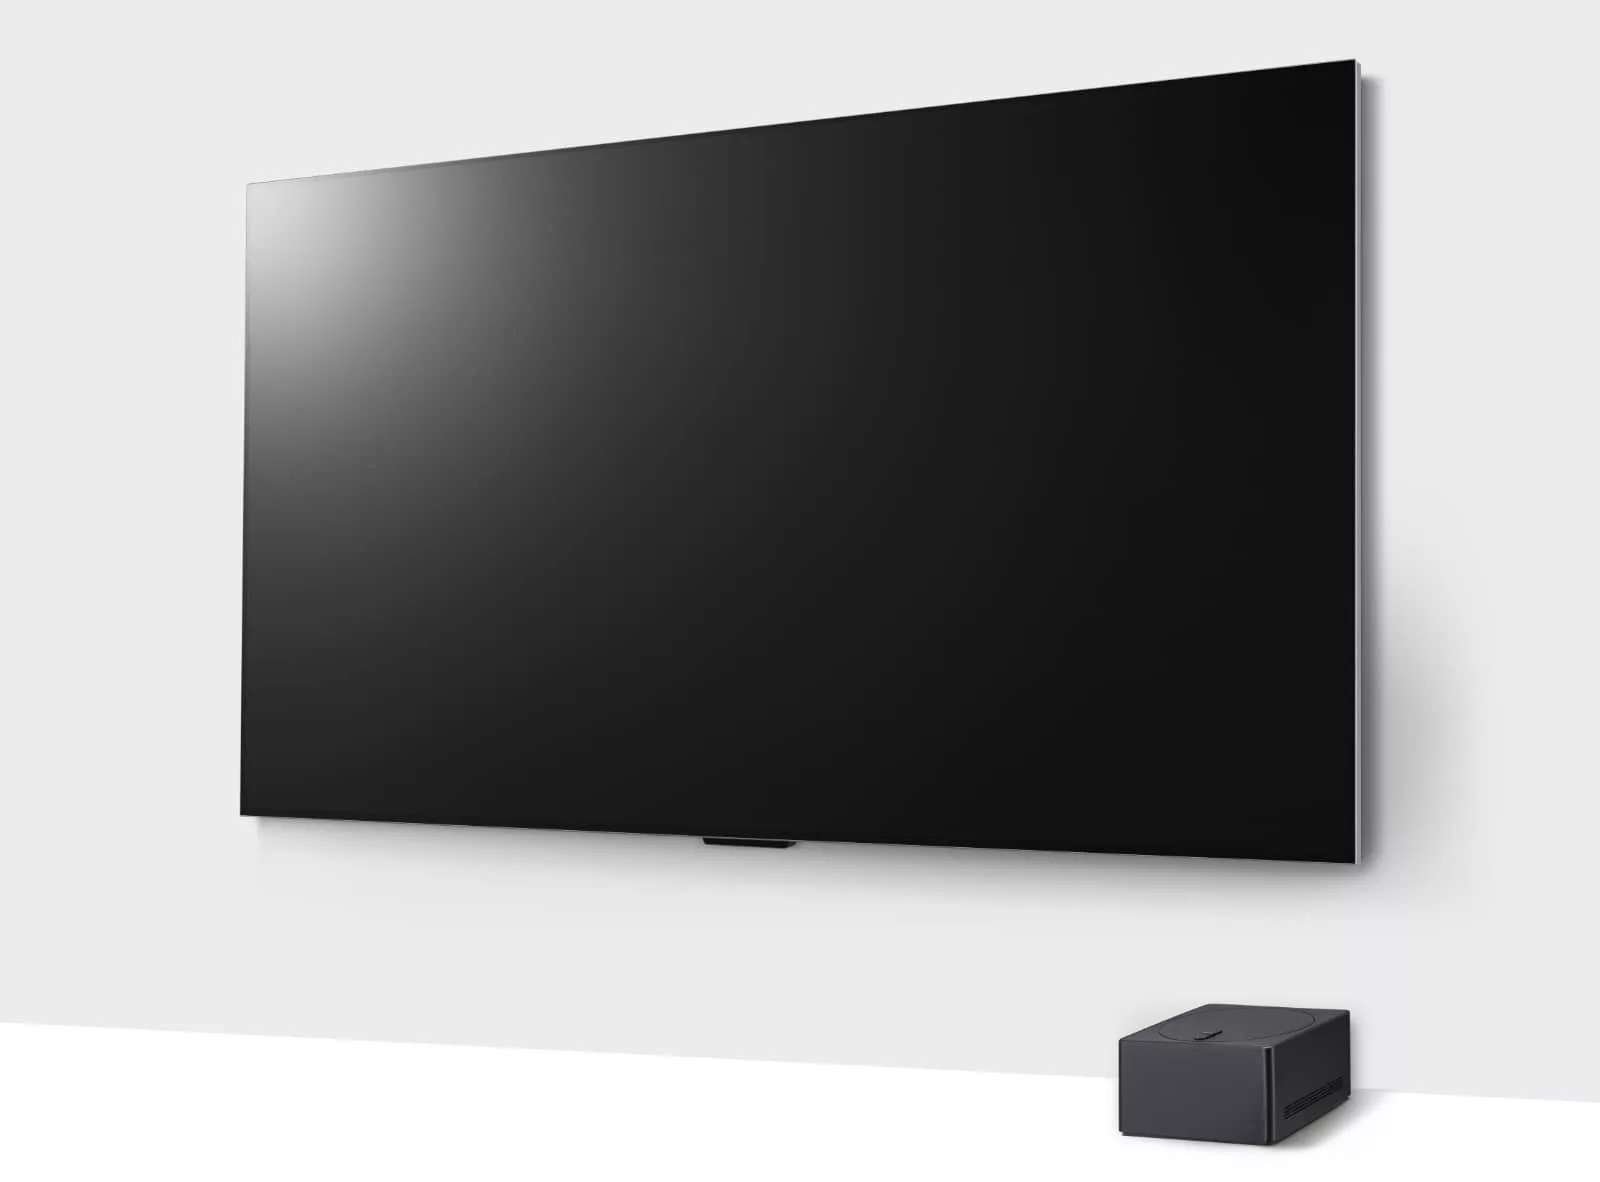 LG's M4 OLED TV